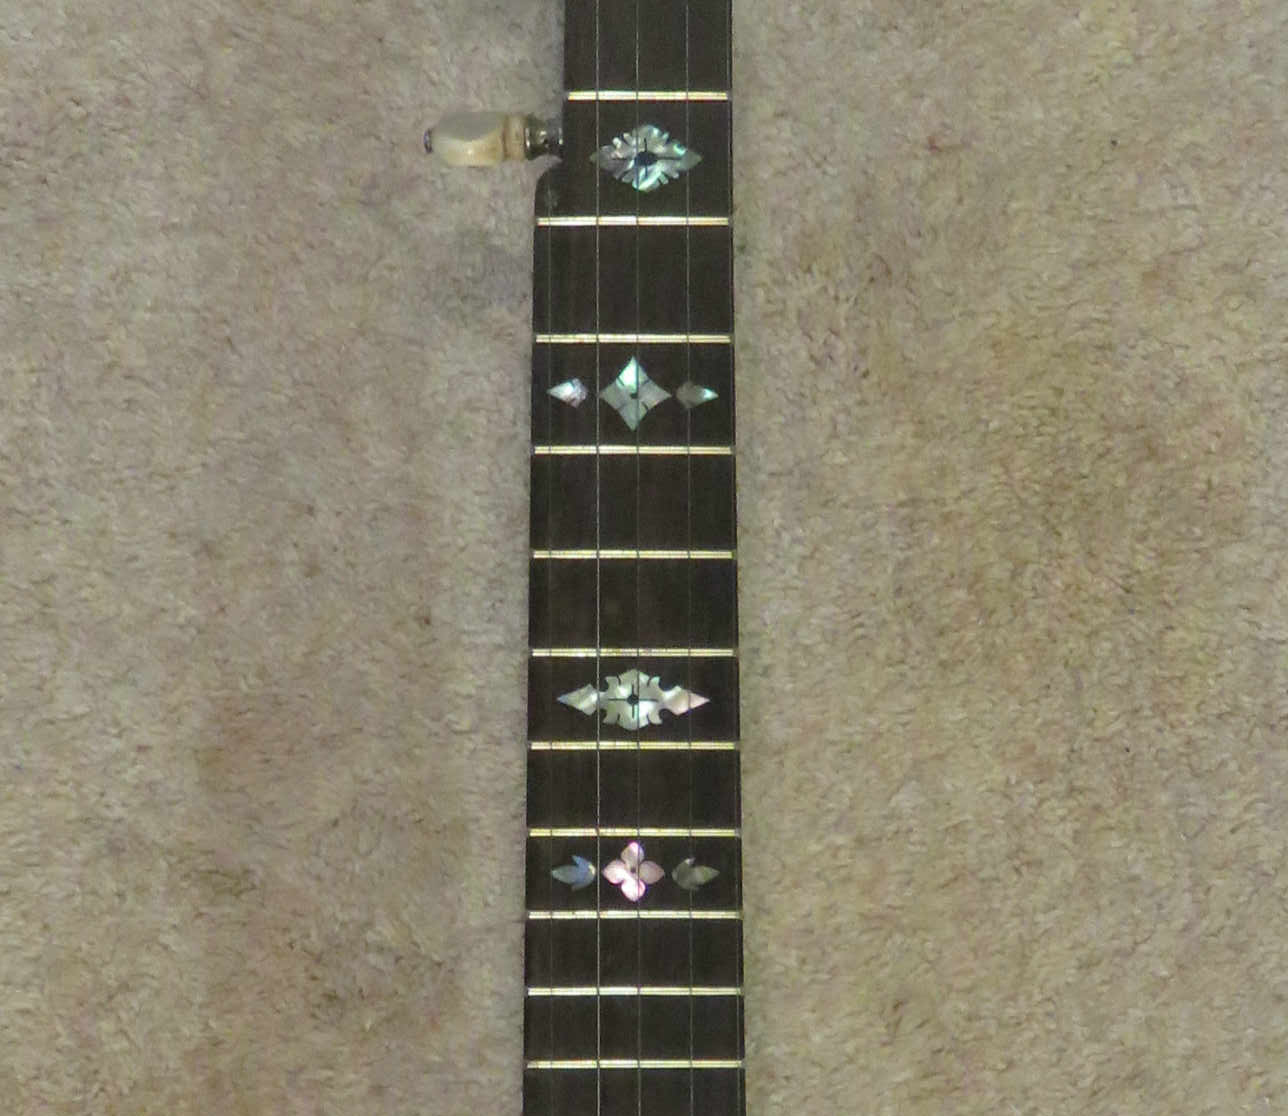 Fretted banjo neck